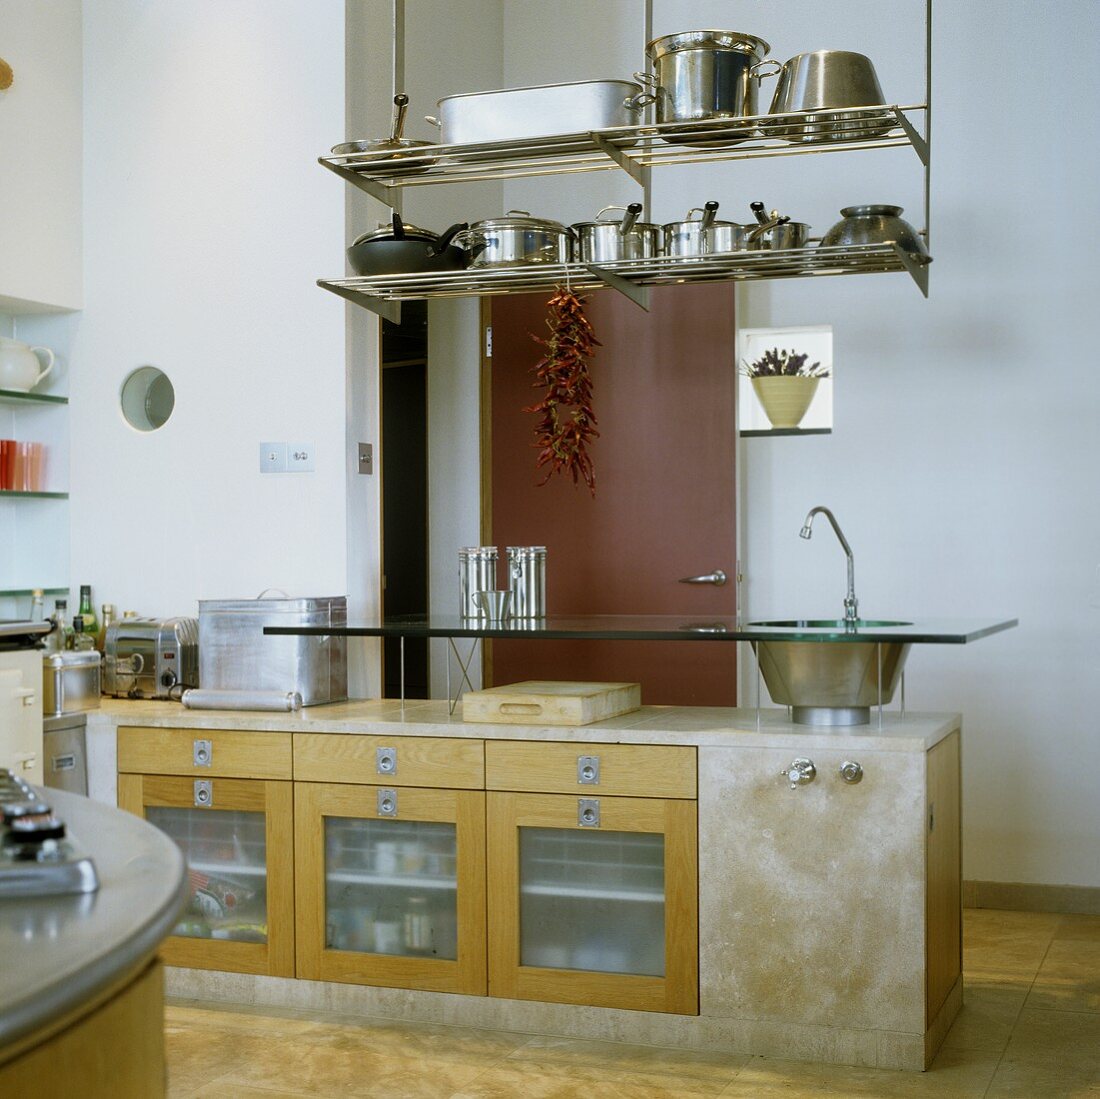 Küchenblock aus Beton mit Thekenaufsatz aus Glas mit integrierter Spüle und abgehängtem Regal